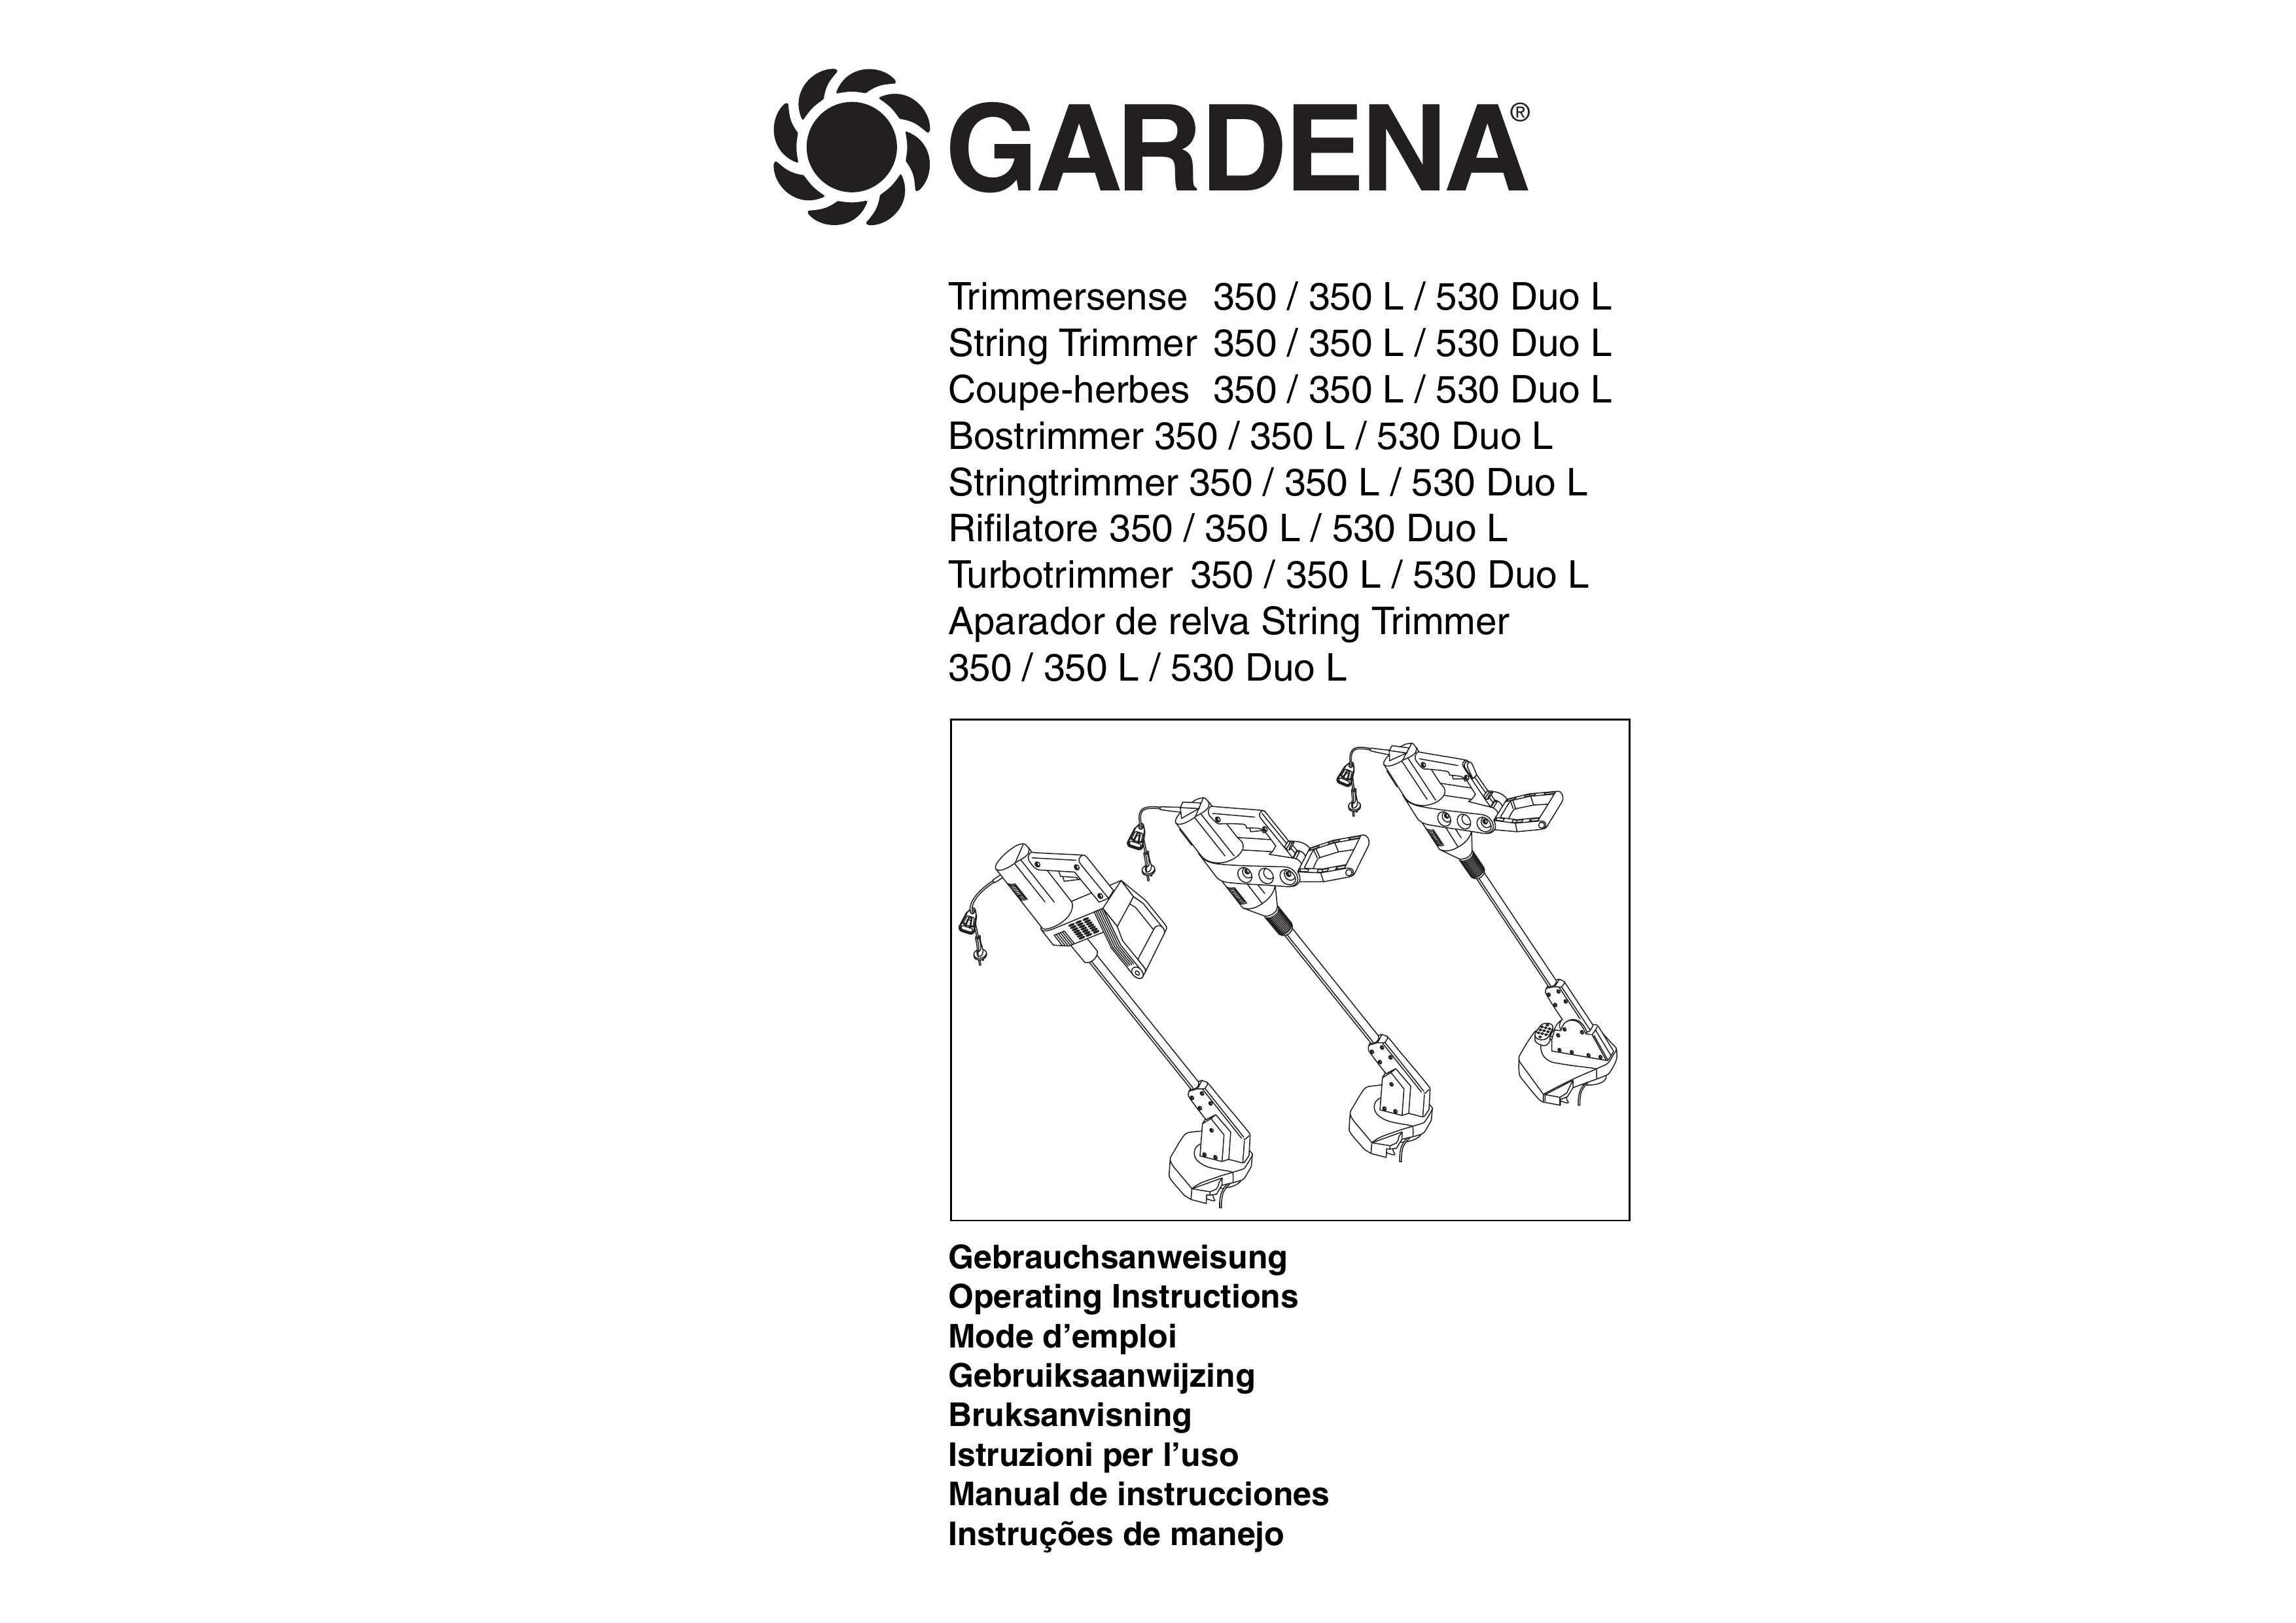 Gardena 530 Duo L Edger User Manual